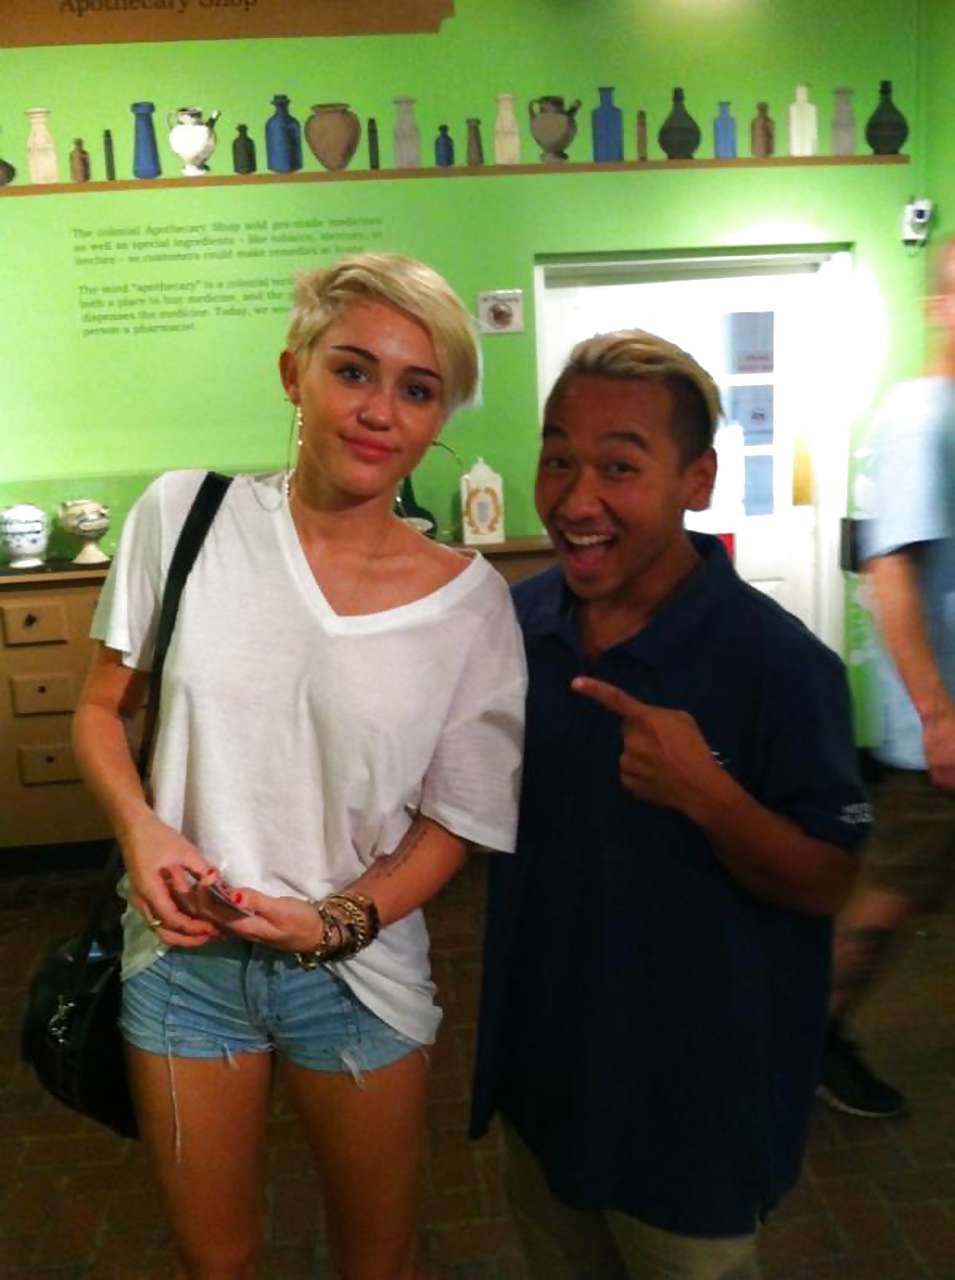 Miley Cyrusが透けて見えるシャツを着て、パンティーを履いてお尻を見せている。
 #75244152